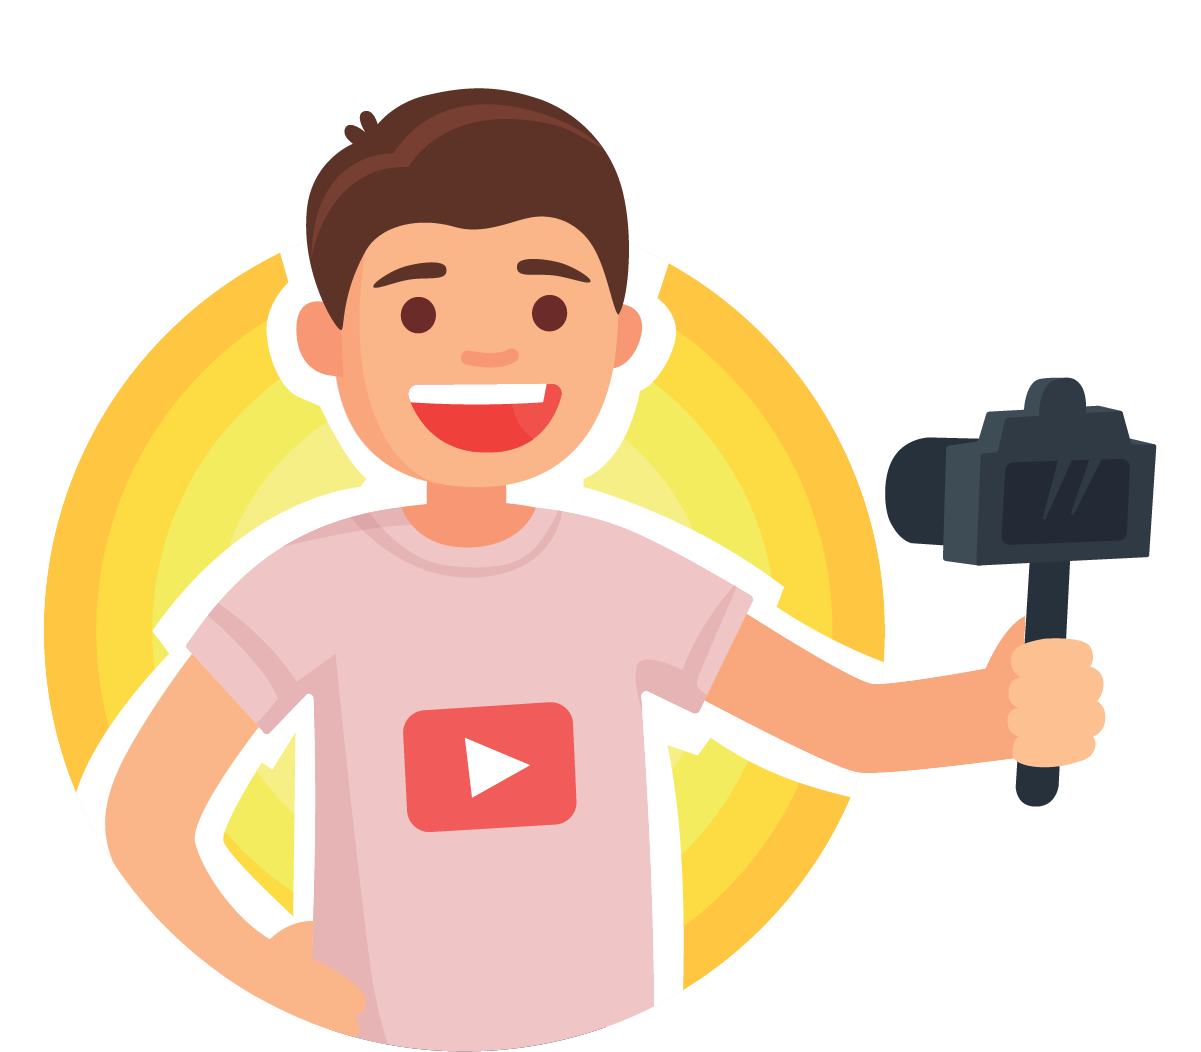 Os vídeos do Youtube devem ajudar, ensinar ou informar o seu público